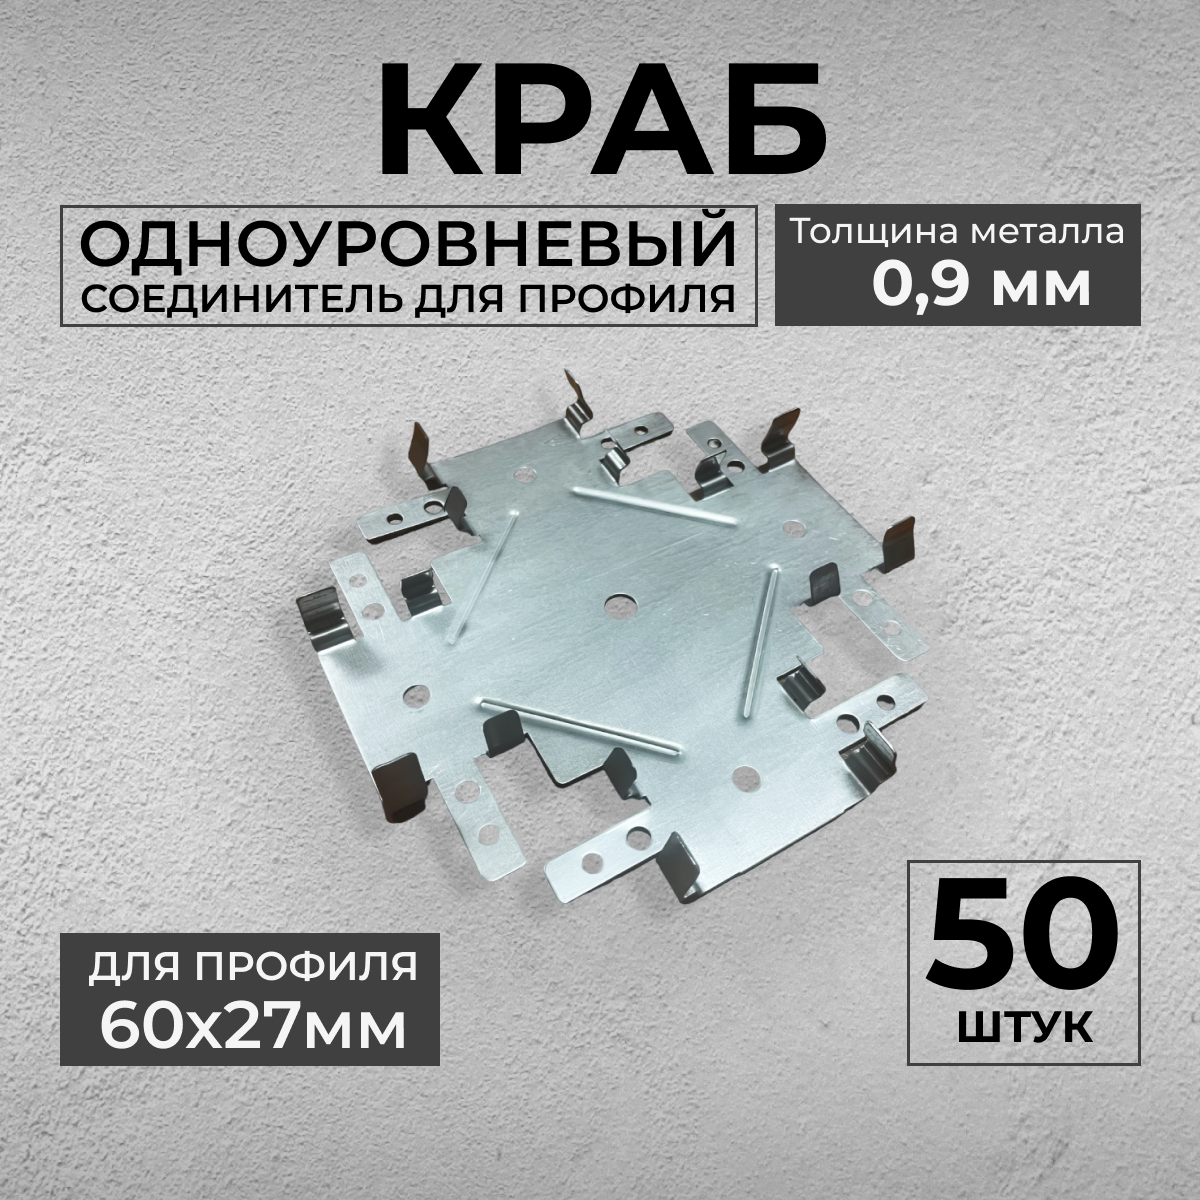 Краб Одноуровневый (50шт) соединитель для ПП 60х27 (толщина 0,9мм)